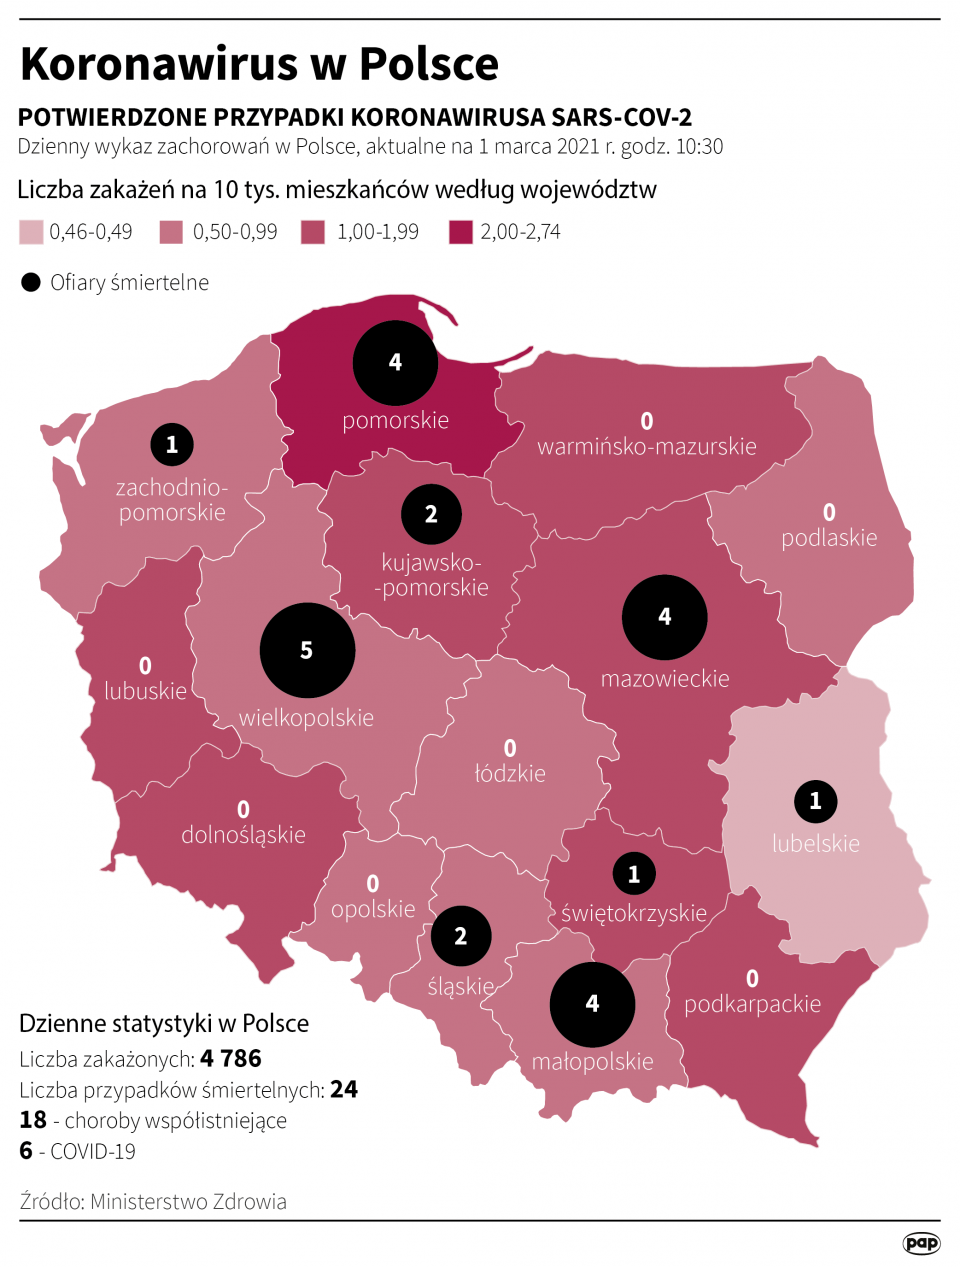 Koronawirus w Polsce stan na 01 marca [autor: Maciej Zieliński, źródło: PAP]